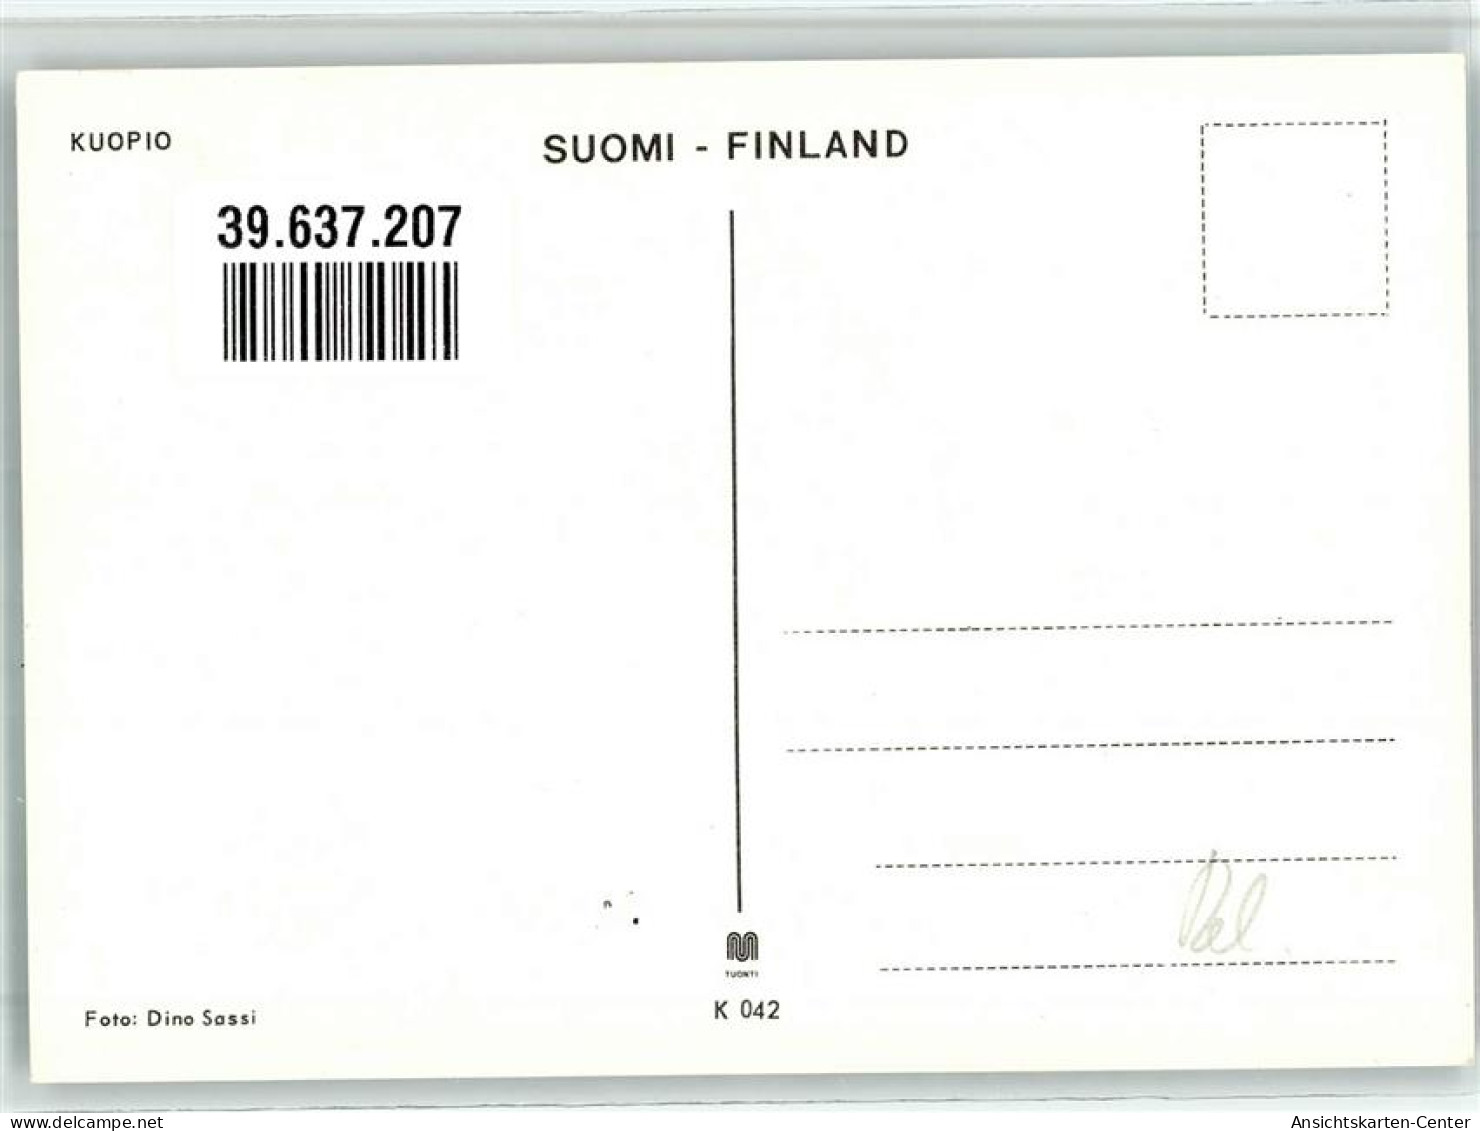 39637207 - Kuopio - Finland